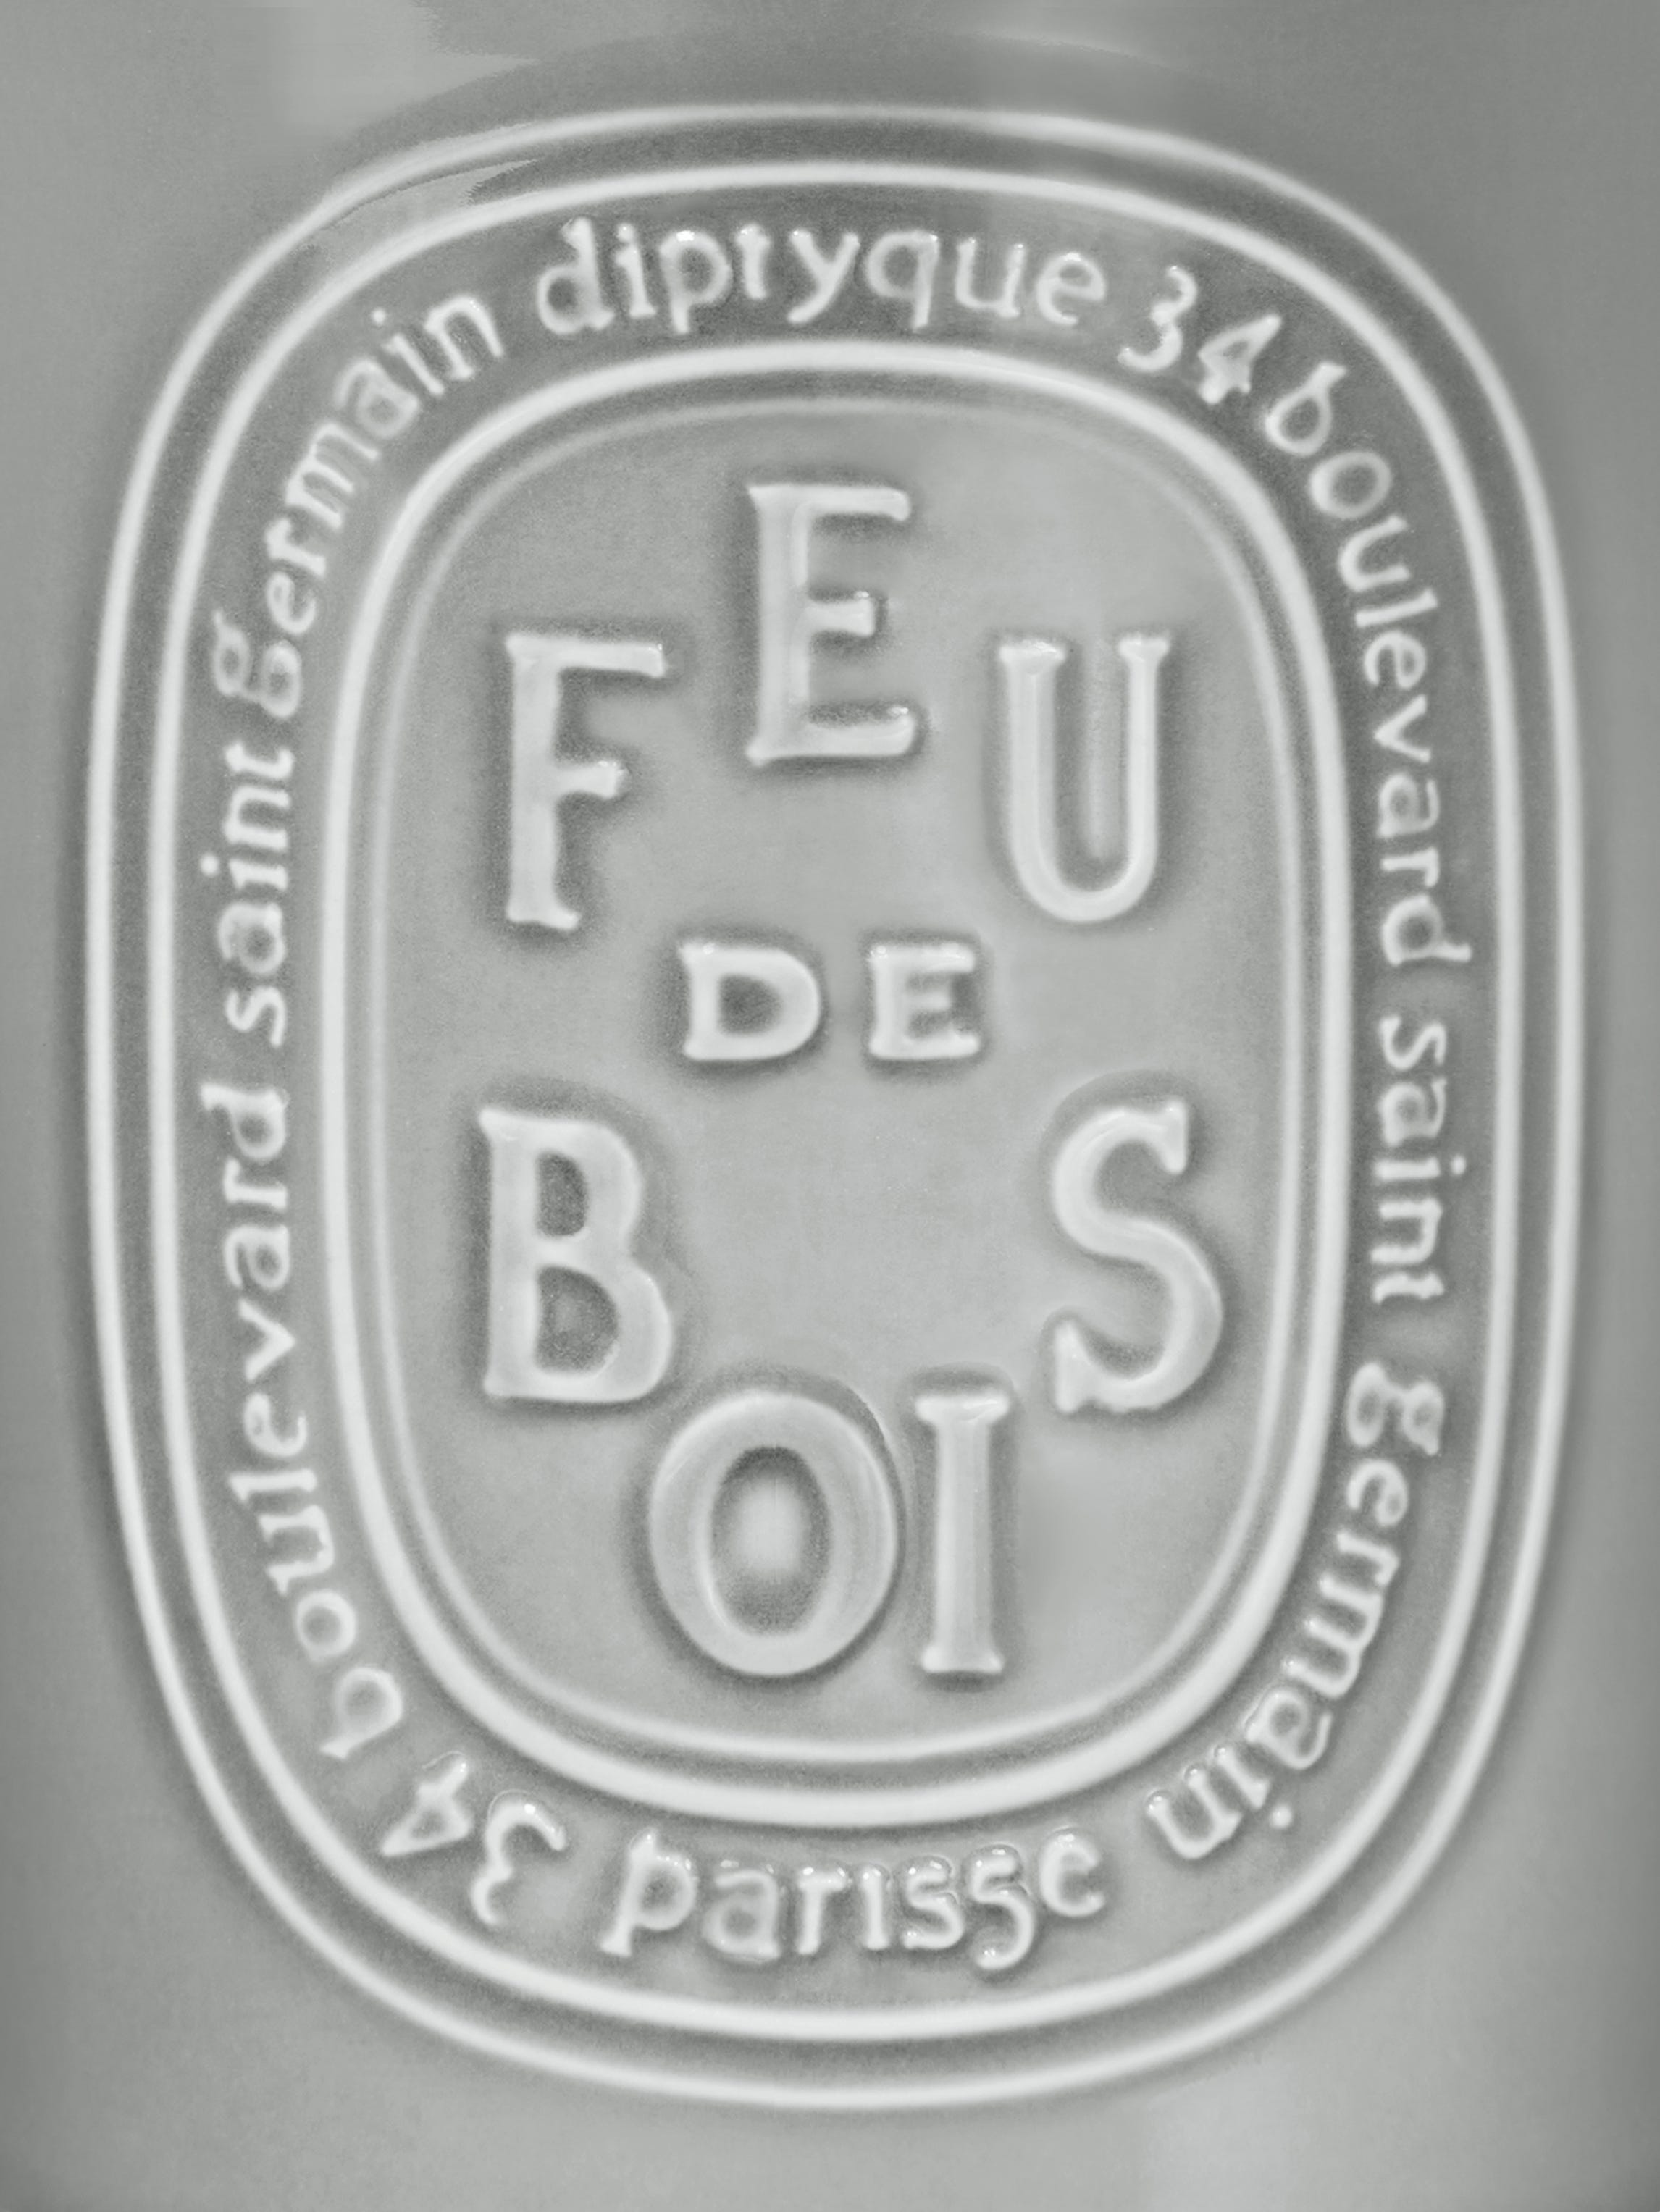 Feu de Bois（フドブワ） - ラージ キャンドル ラージ | Diptyque Paris